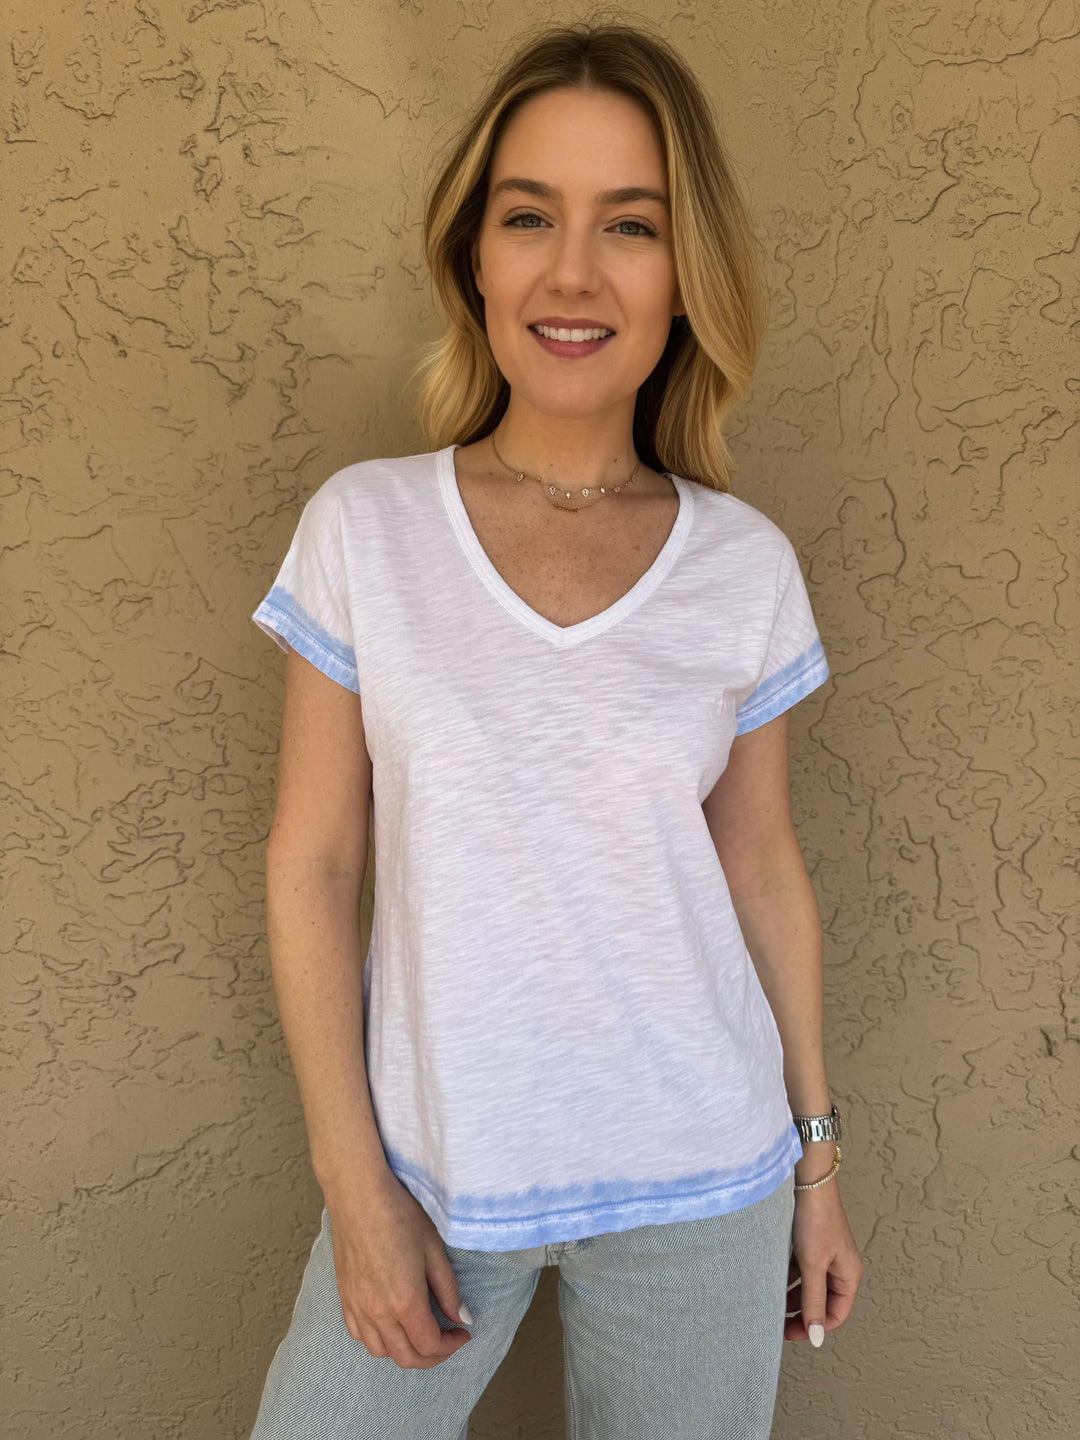 Elliott Lauren Misty Cloud T-Shirt - White/Blue